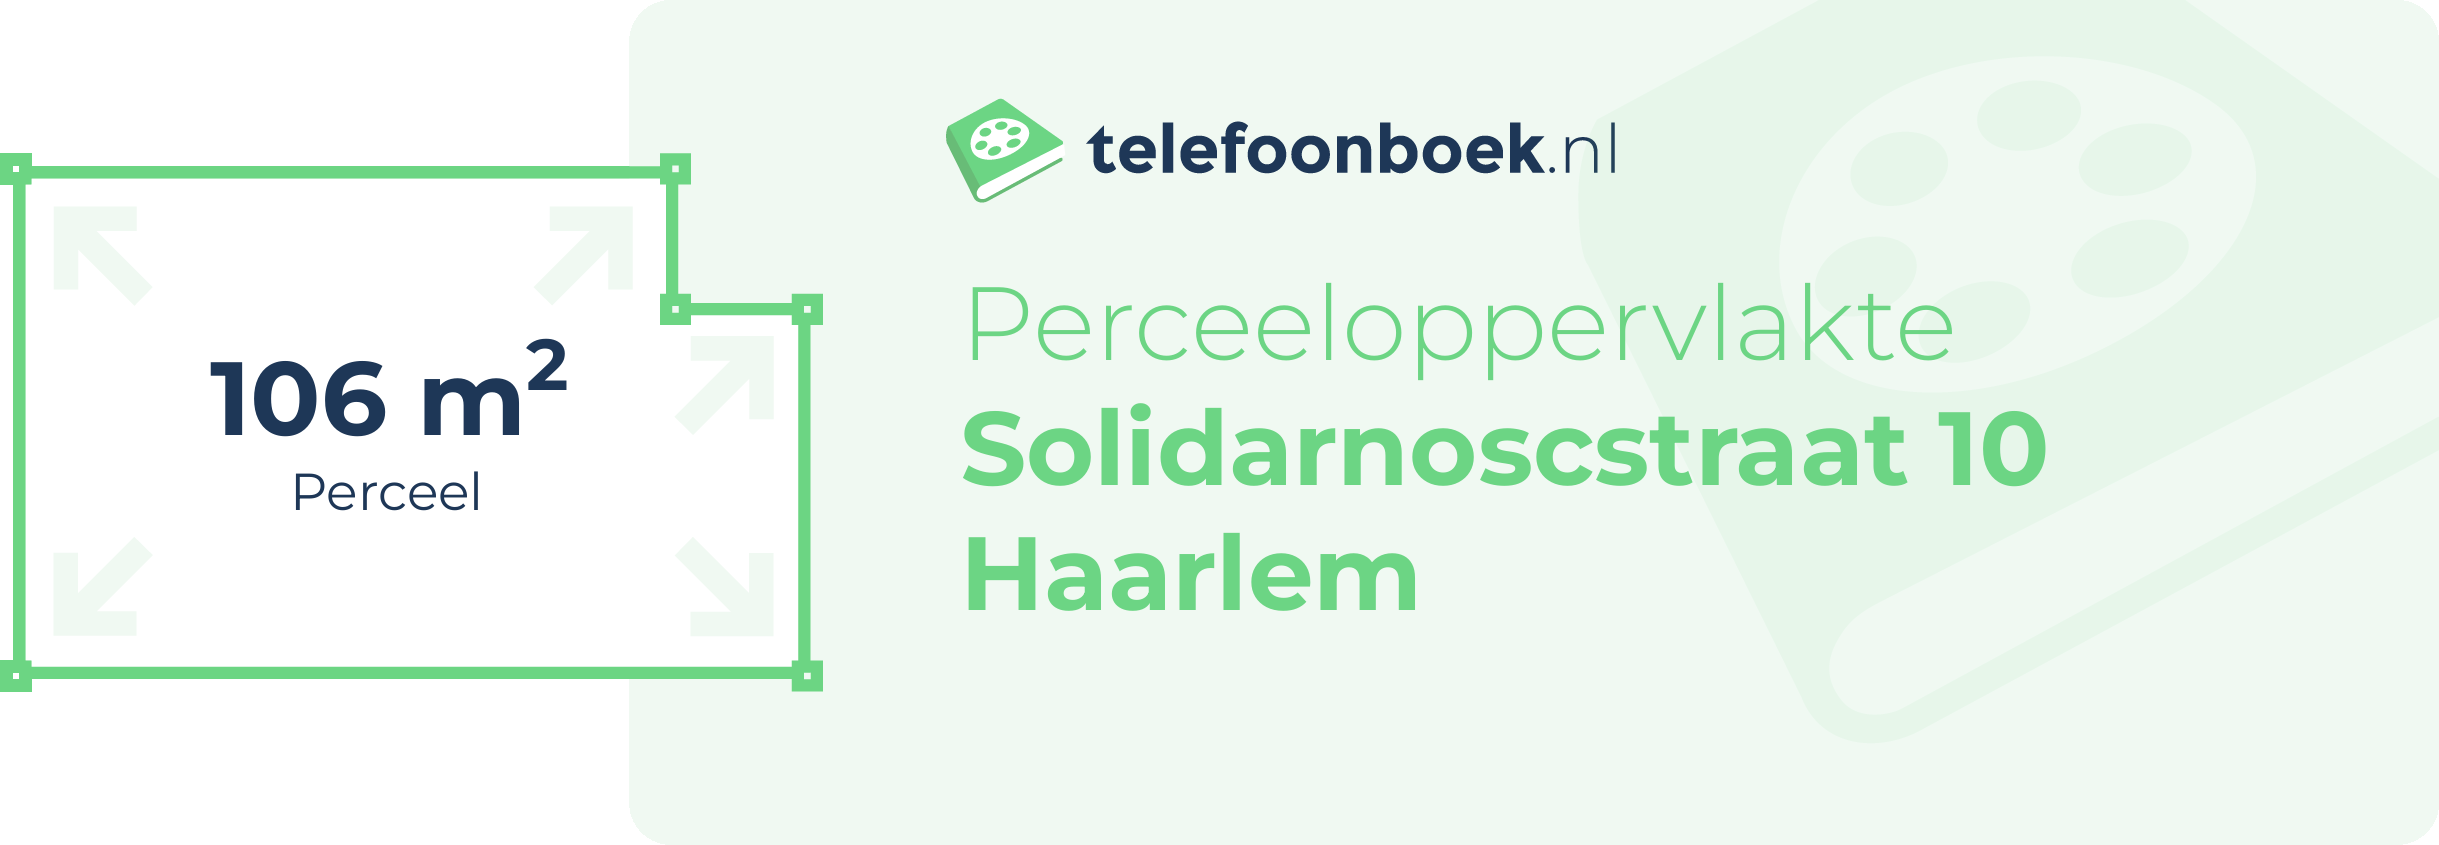 Perceeloppervlakte Solidarnoscstraat 10 Haarlem